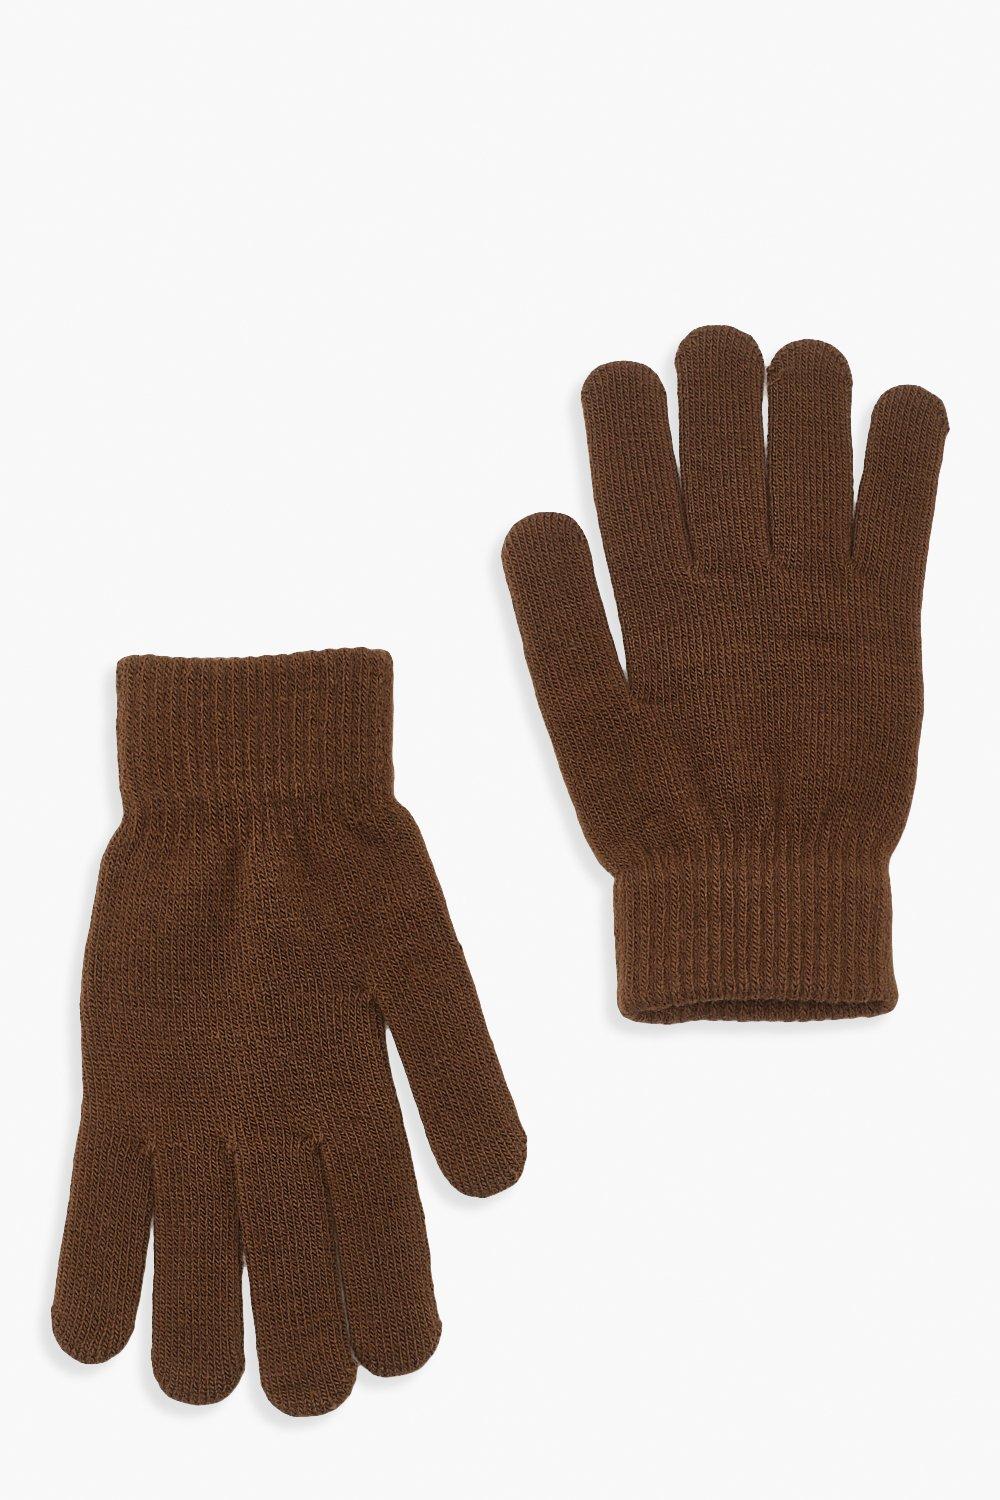 Tan Magic Gloves